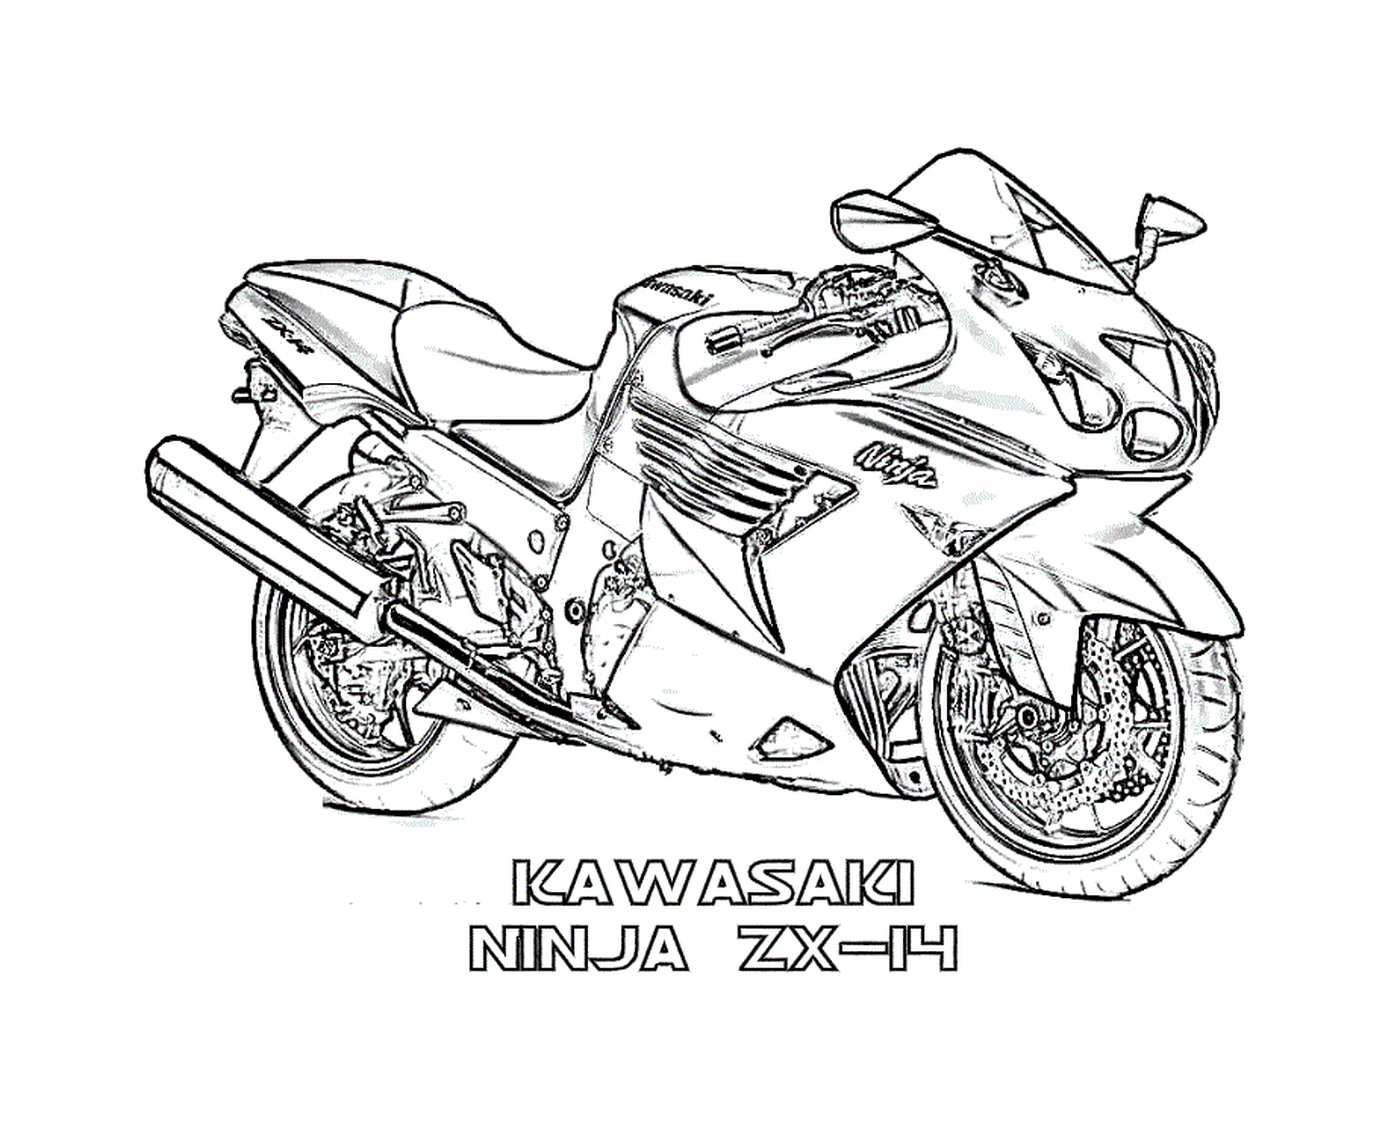  Kawasaki Ninja, Batman motorcycle 